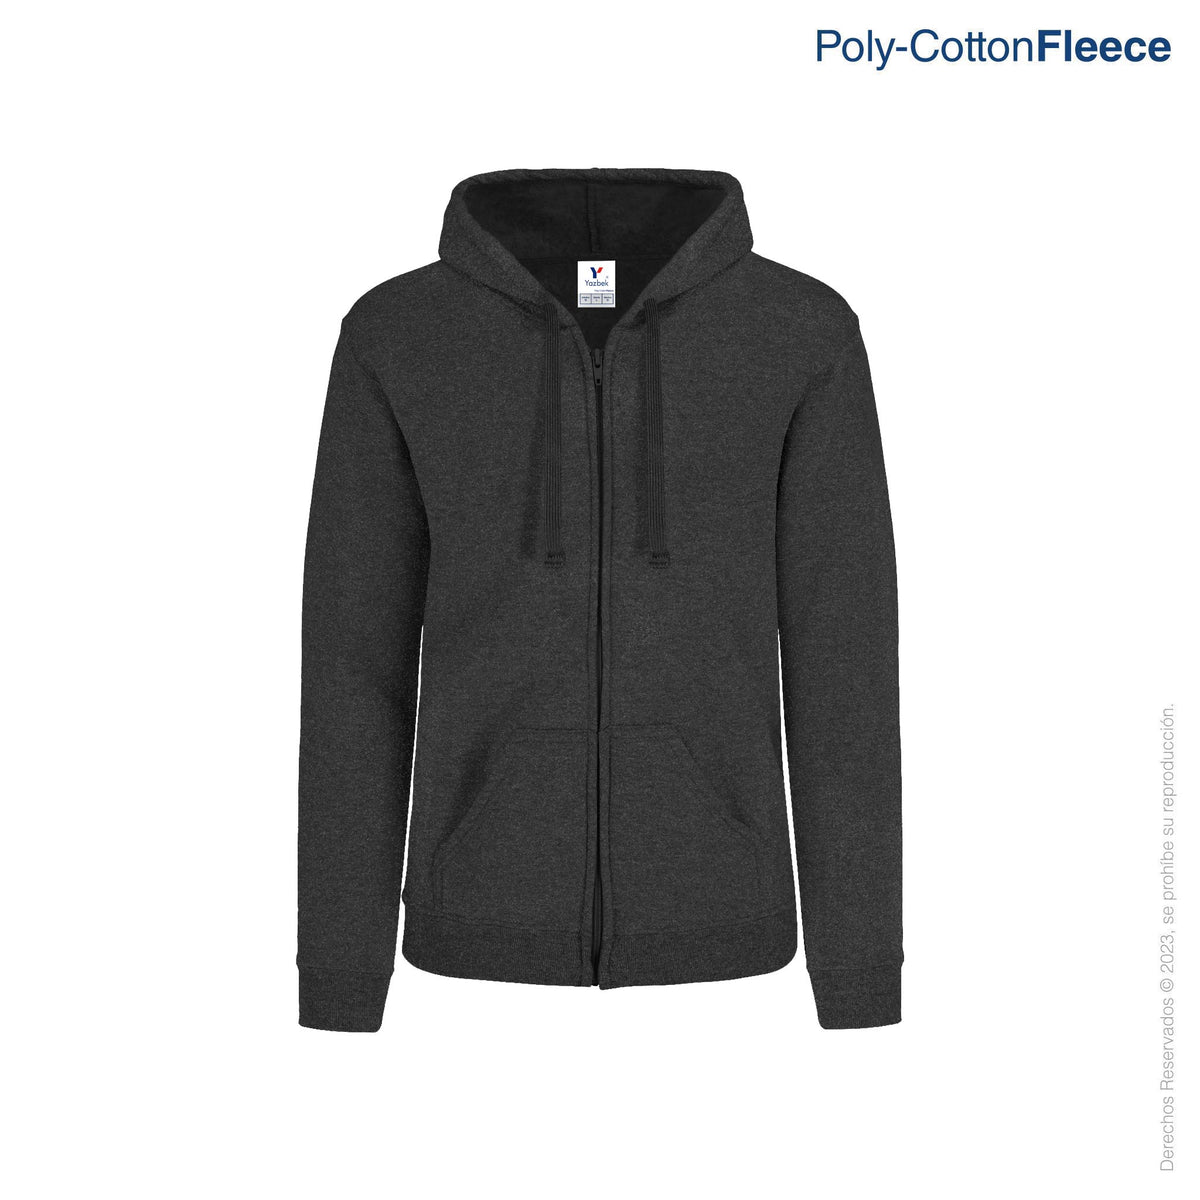 Adult’s Unisex Full Zip Hooded Sweatshirt with Kangaroo Pocket · 50% C ...